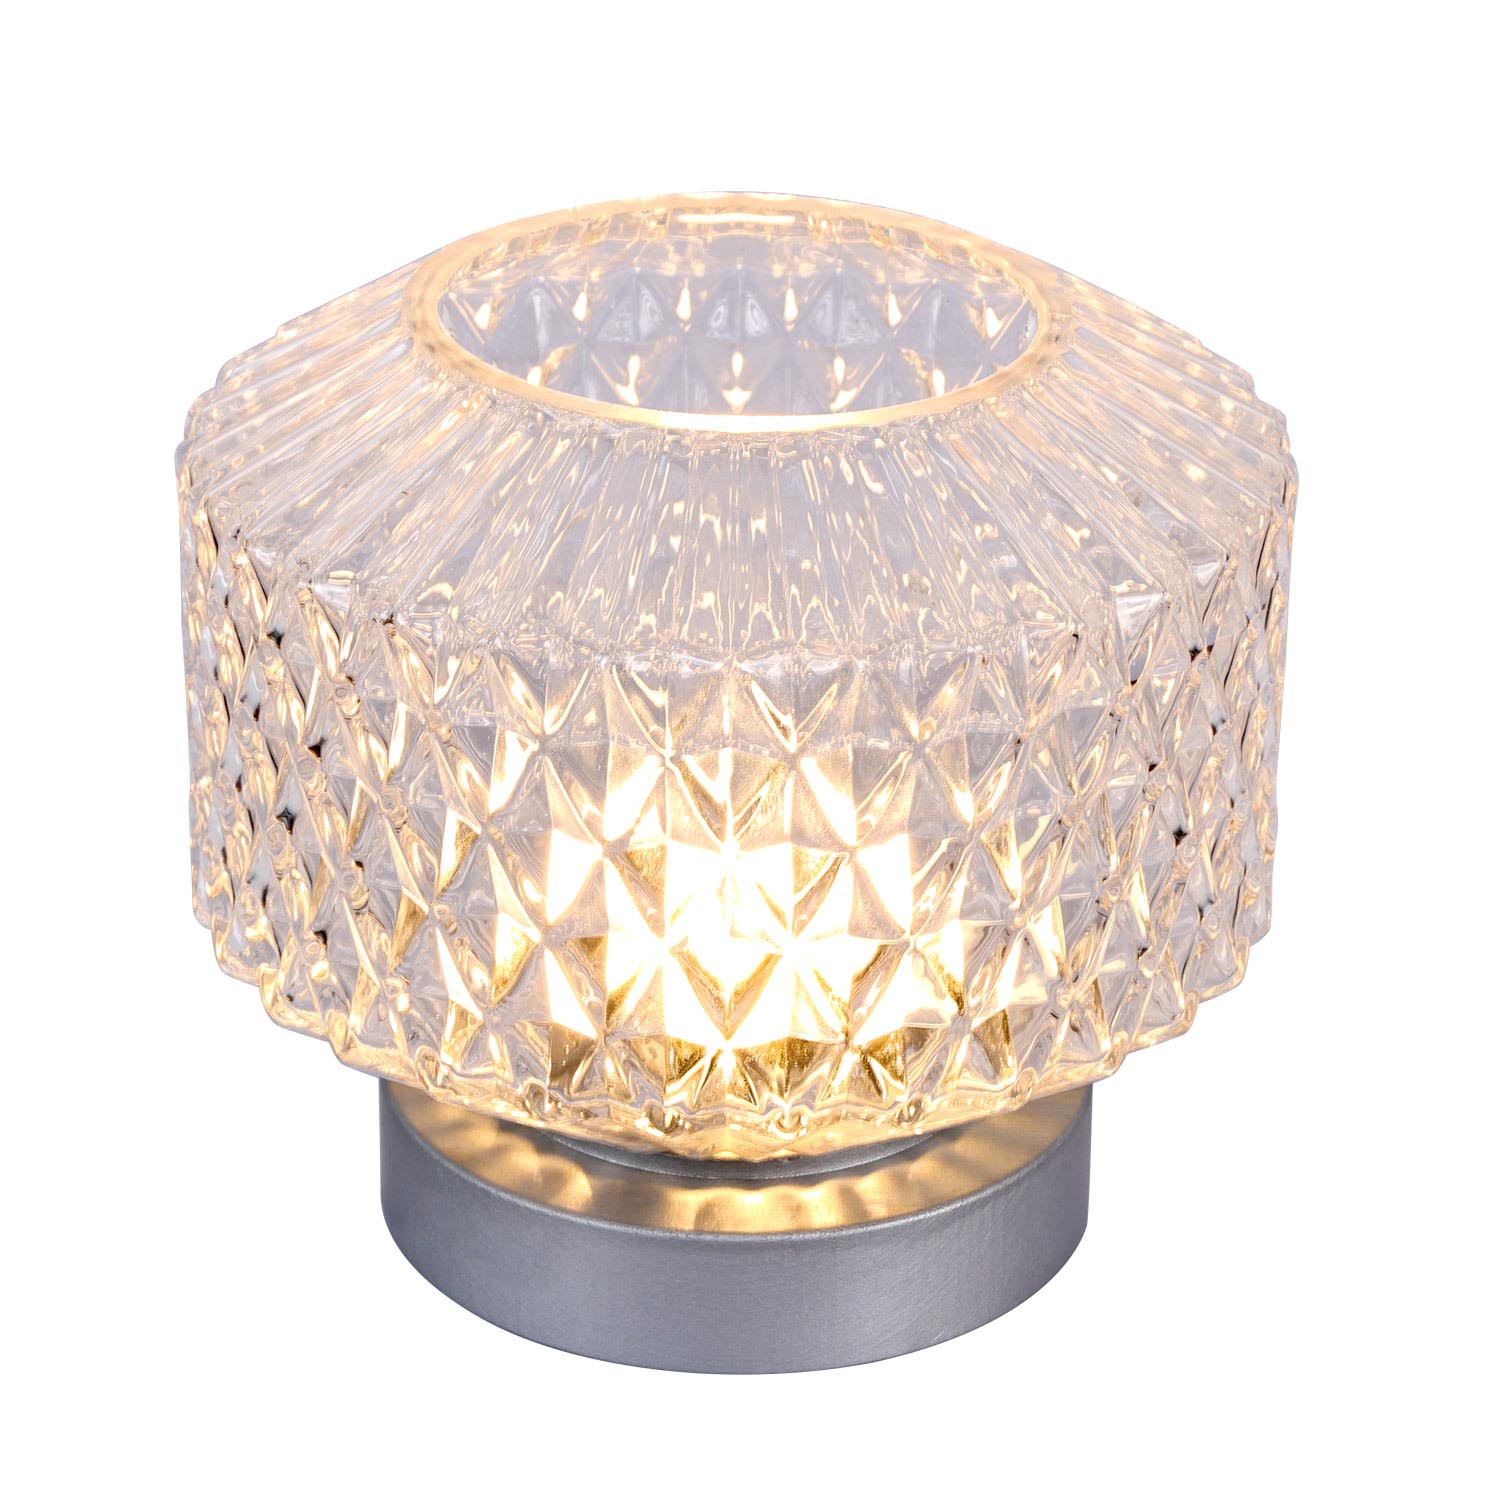 Circular table lamp